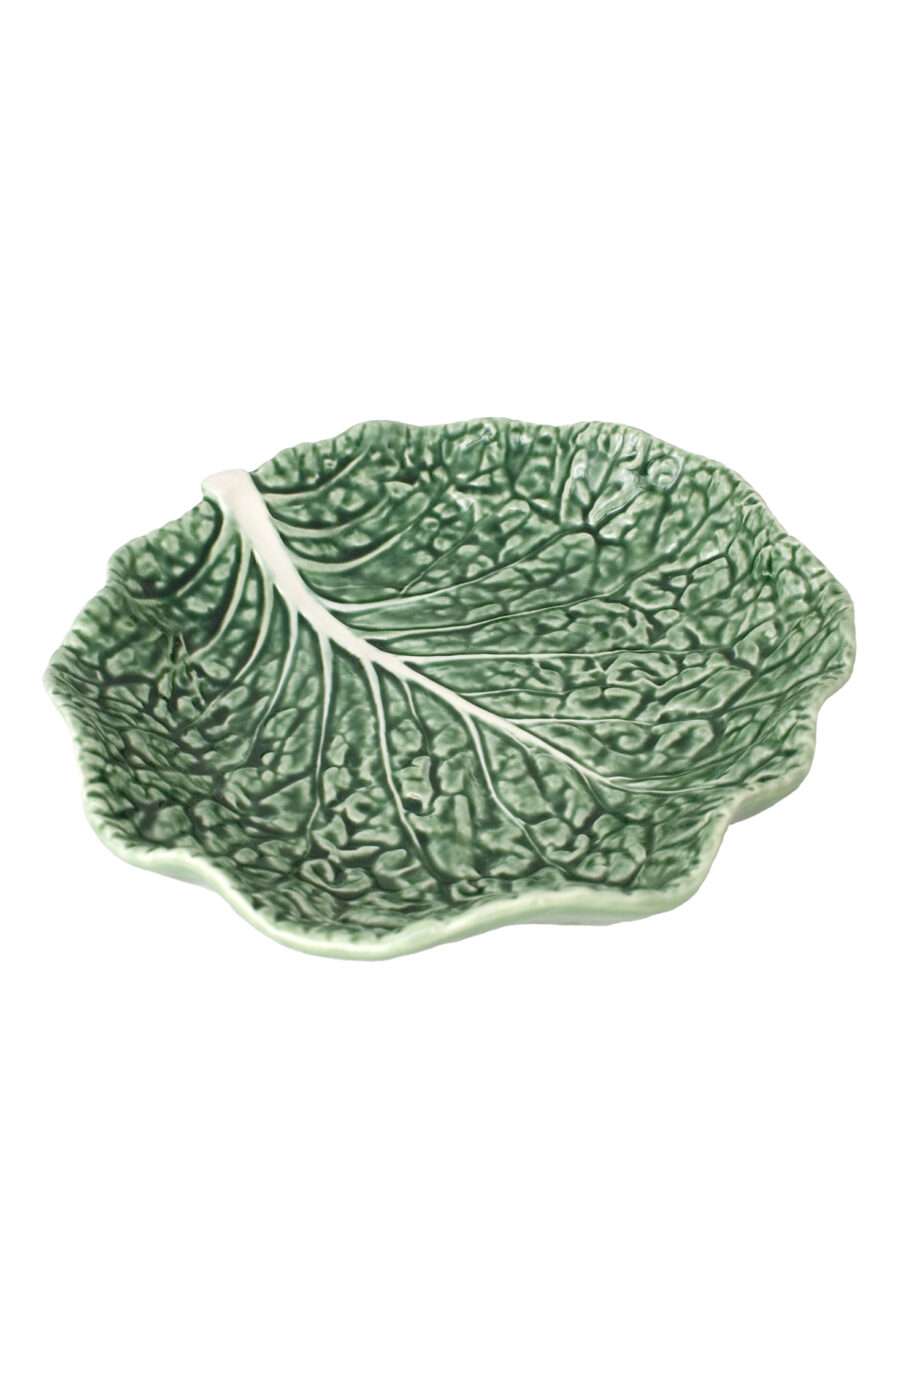 salad bowl cabbage leaf large